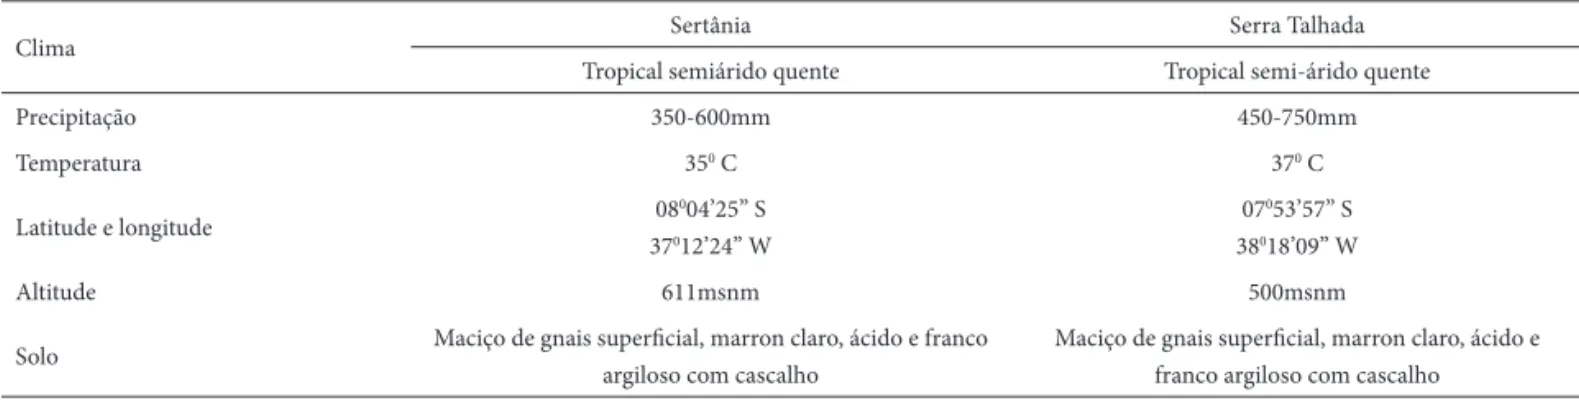 Tabela 1.  Dados climáticos e geológicos referentes às regiões de Sertânia e Serra Talhada, Pernambuco, Brasil.